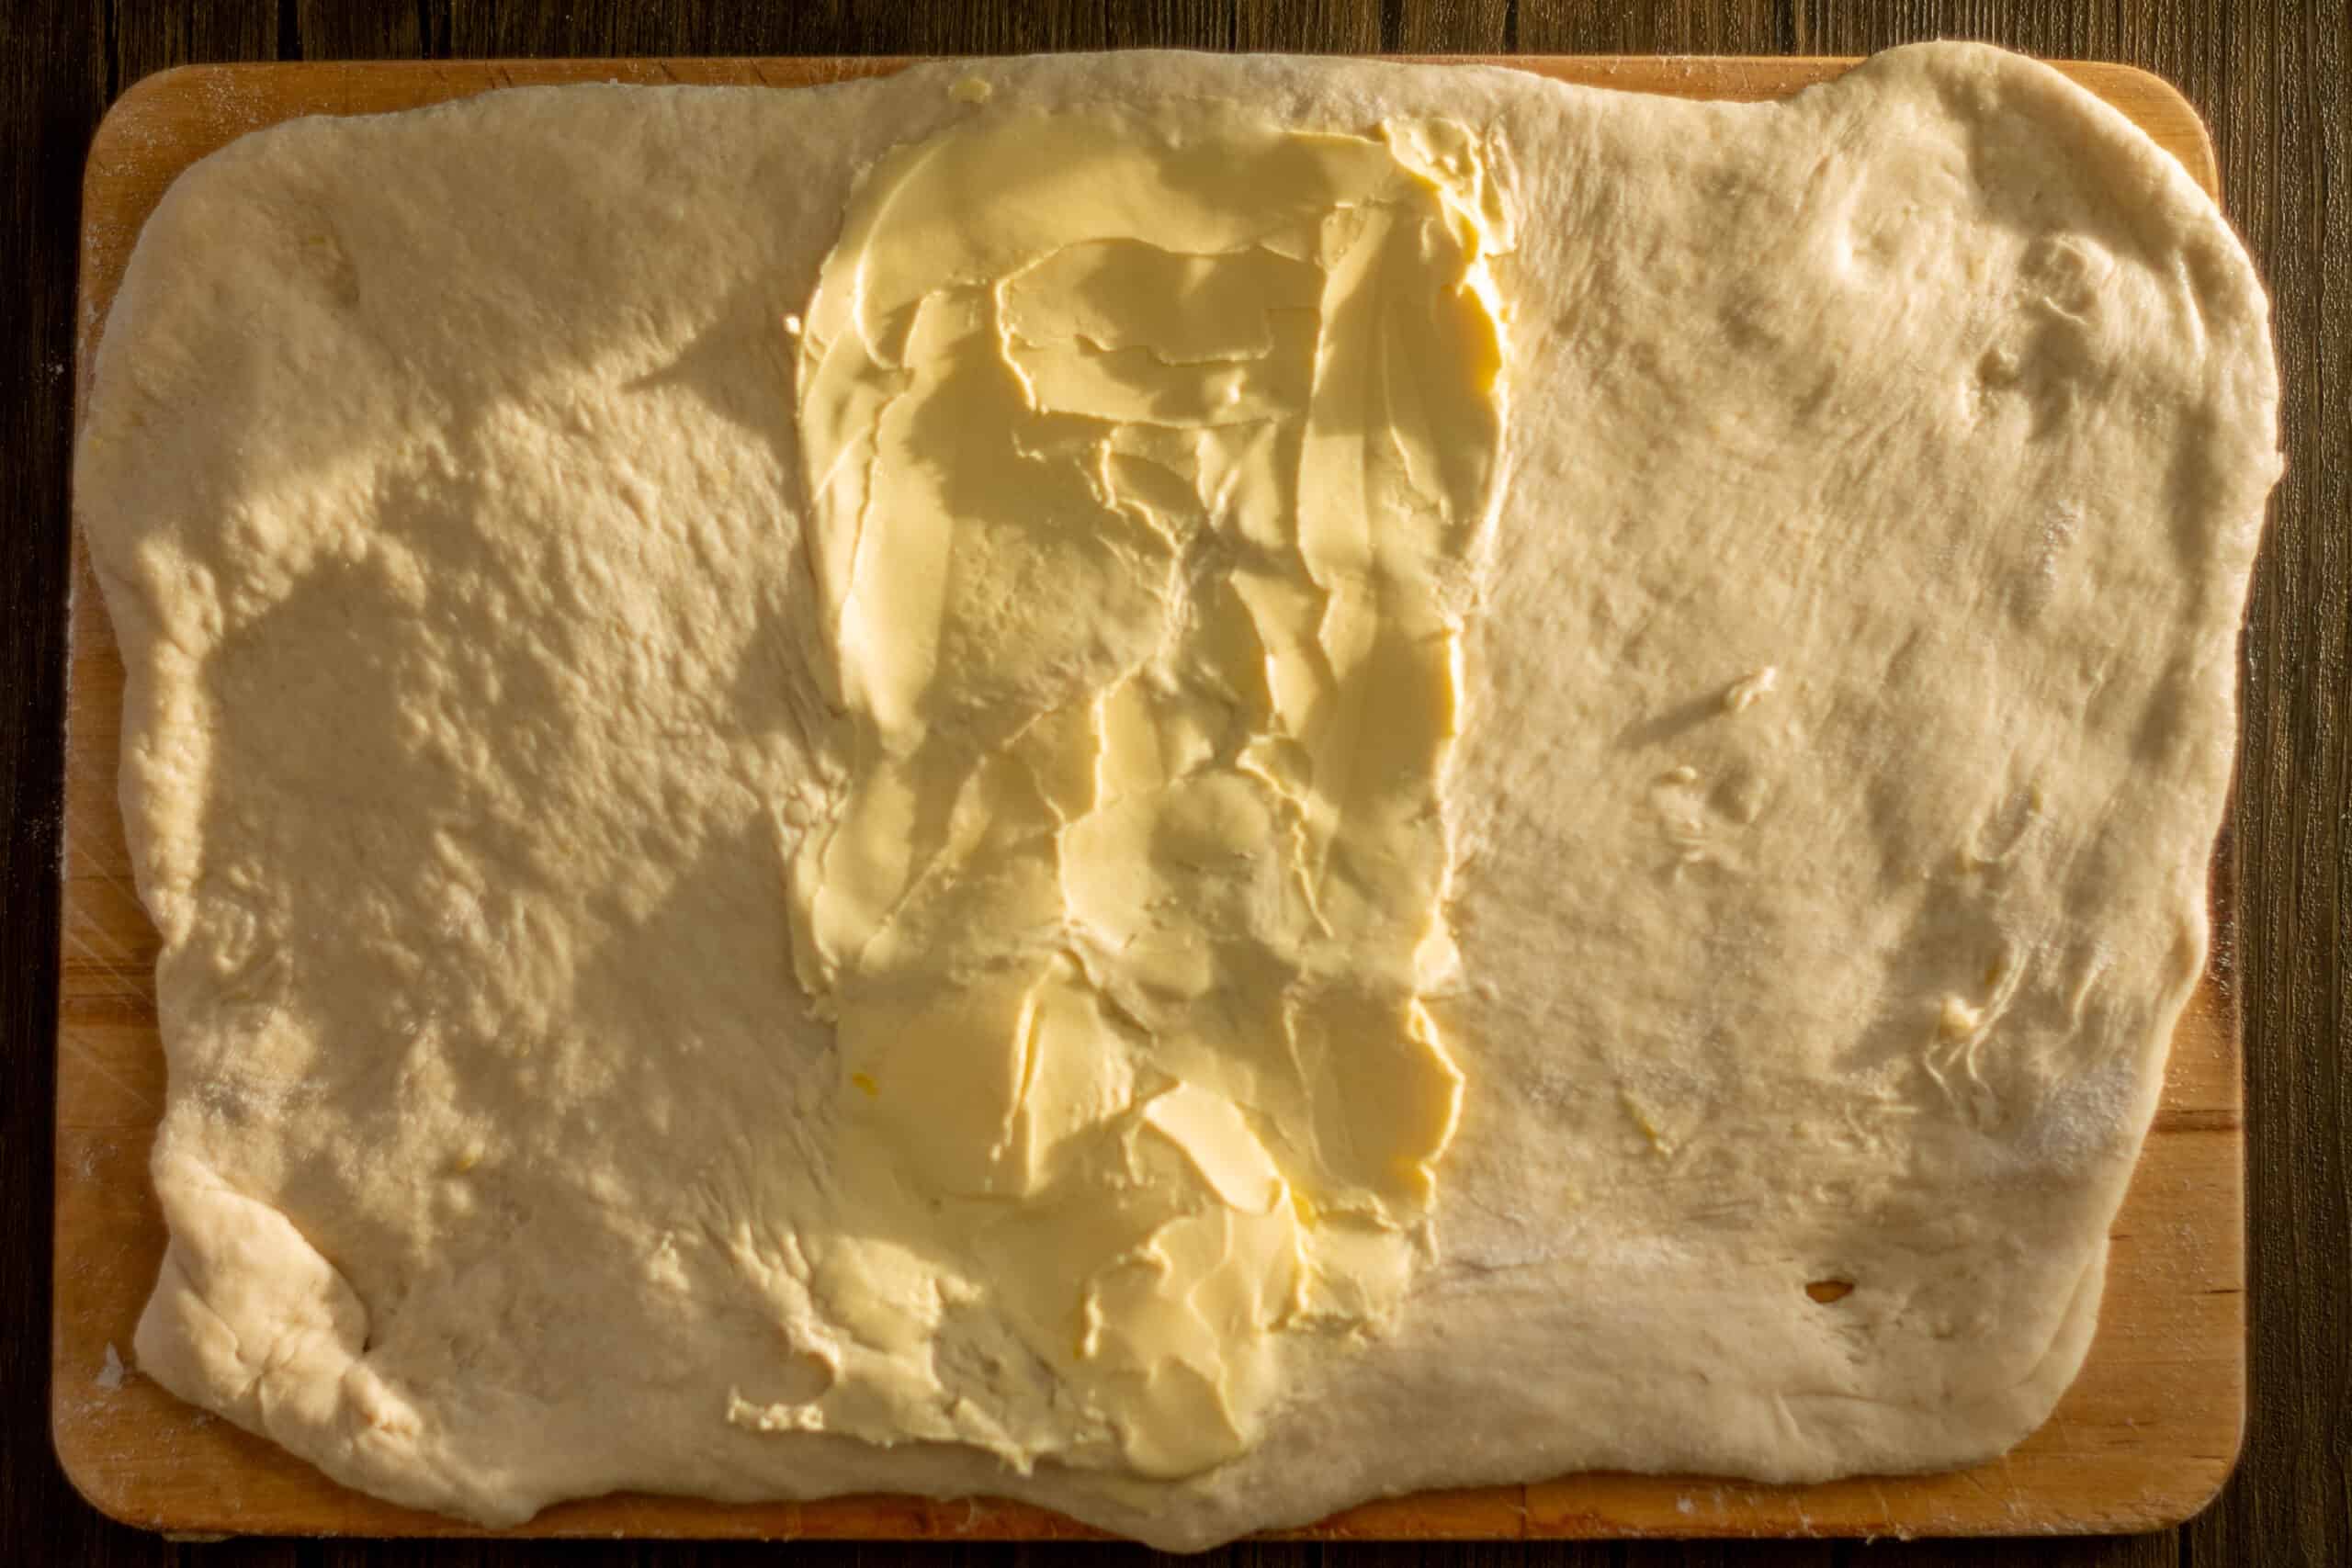 Spreading butter onto pandoro dough